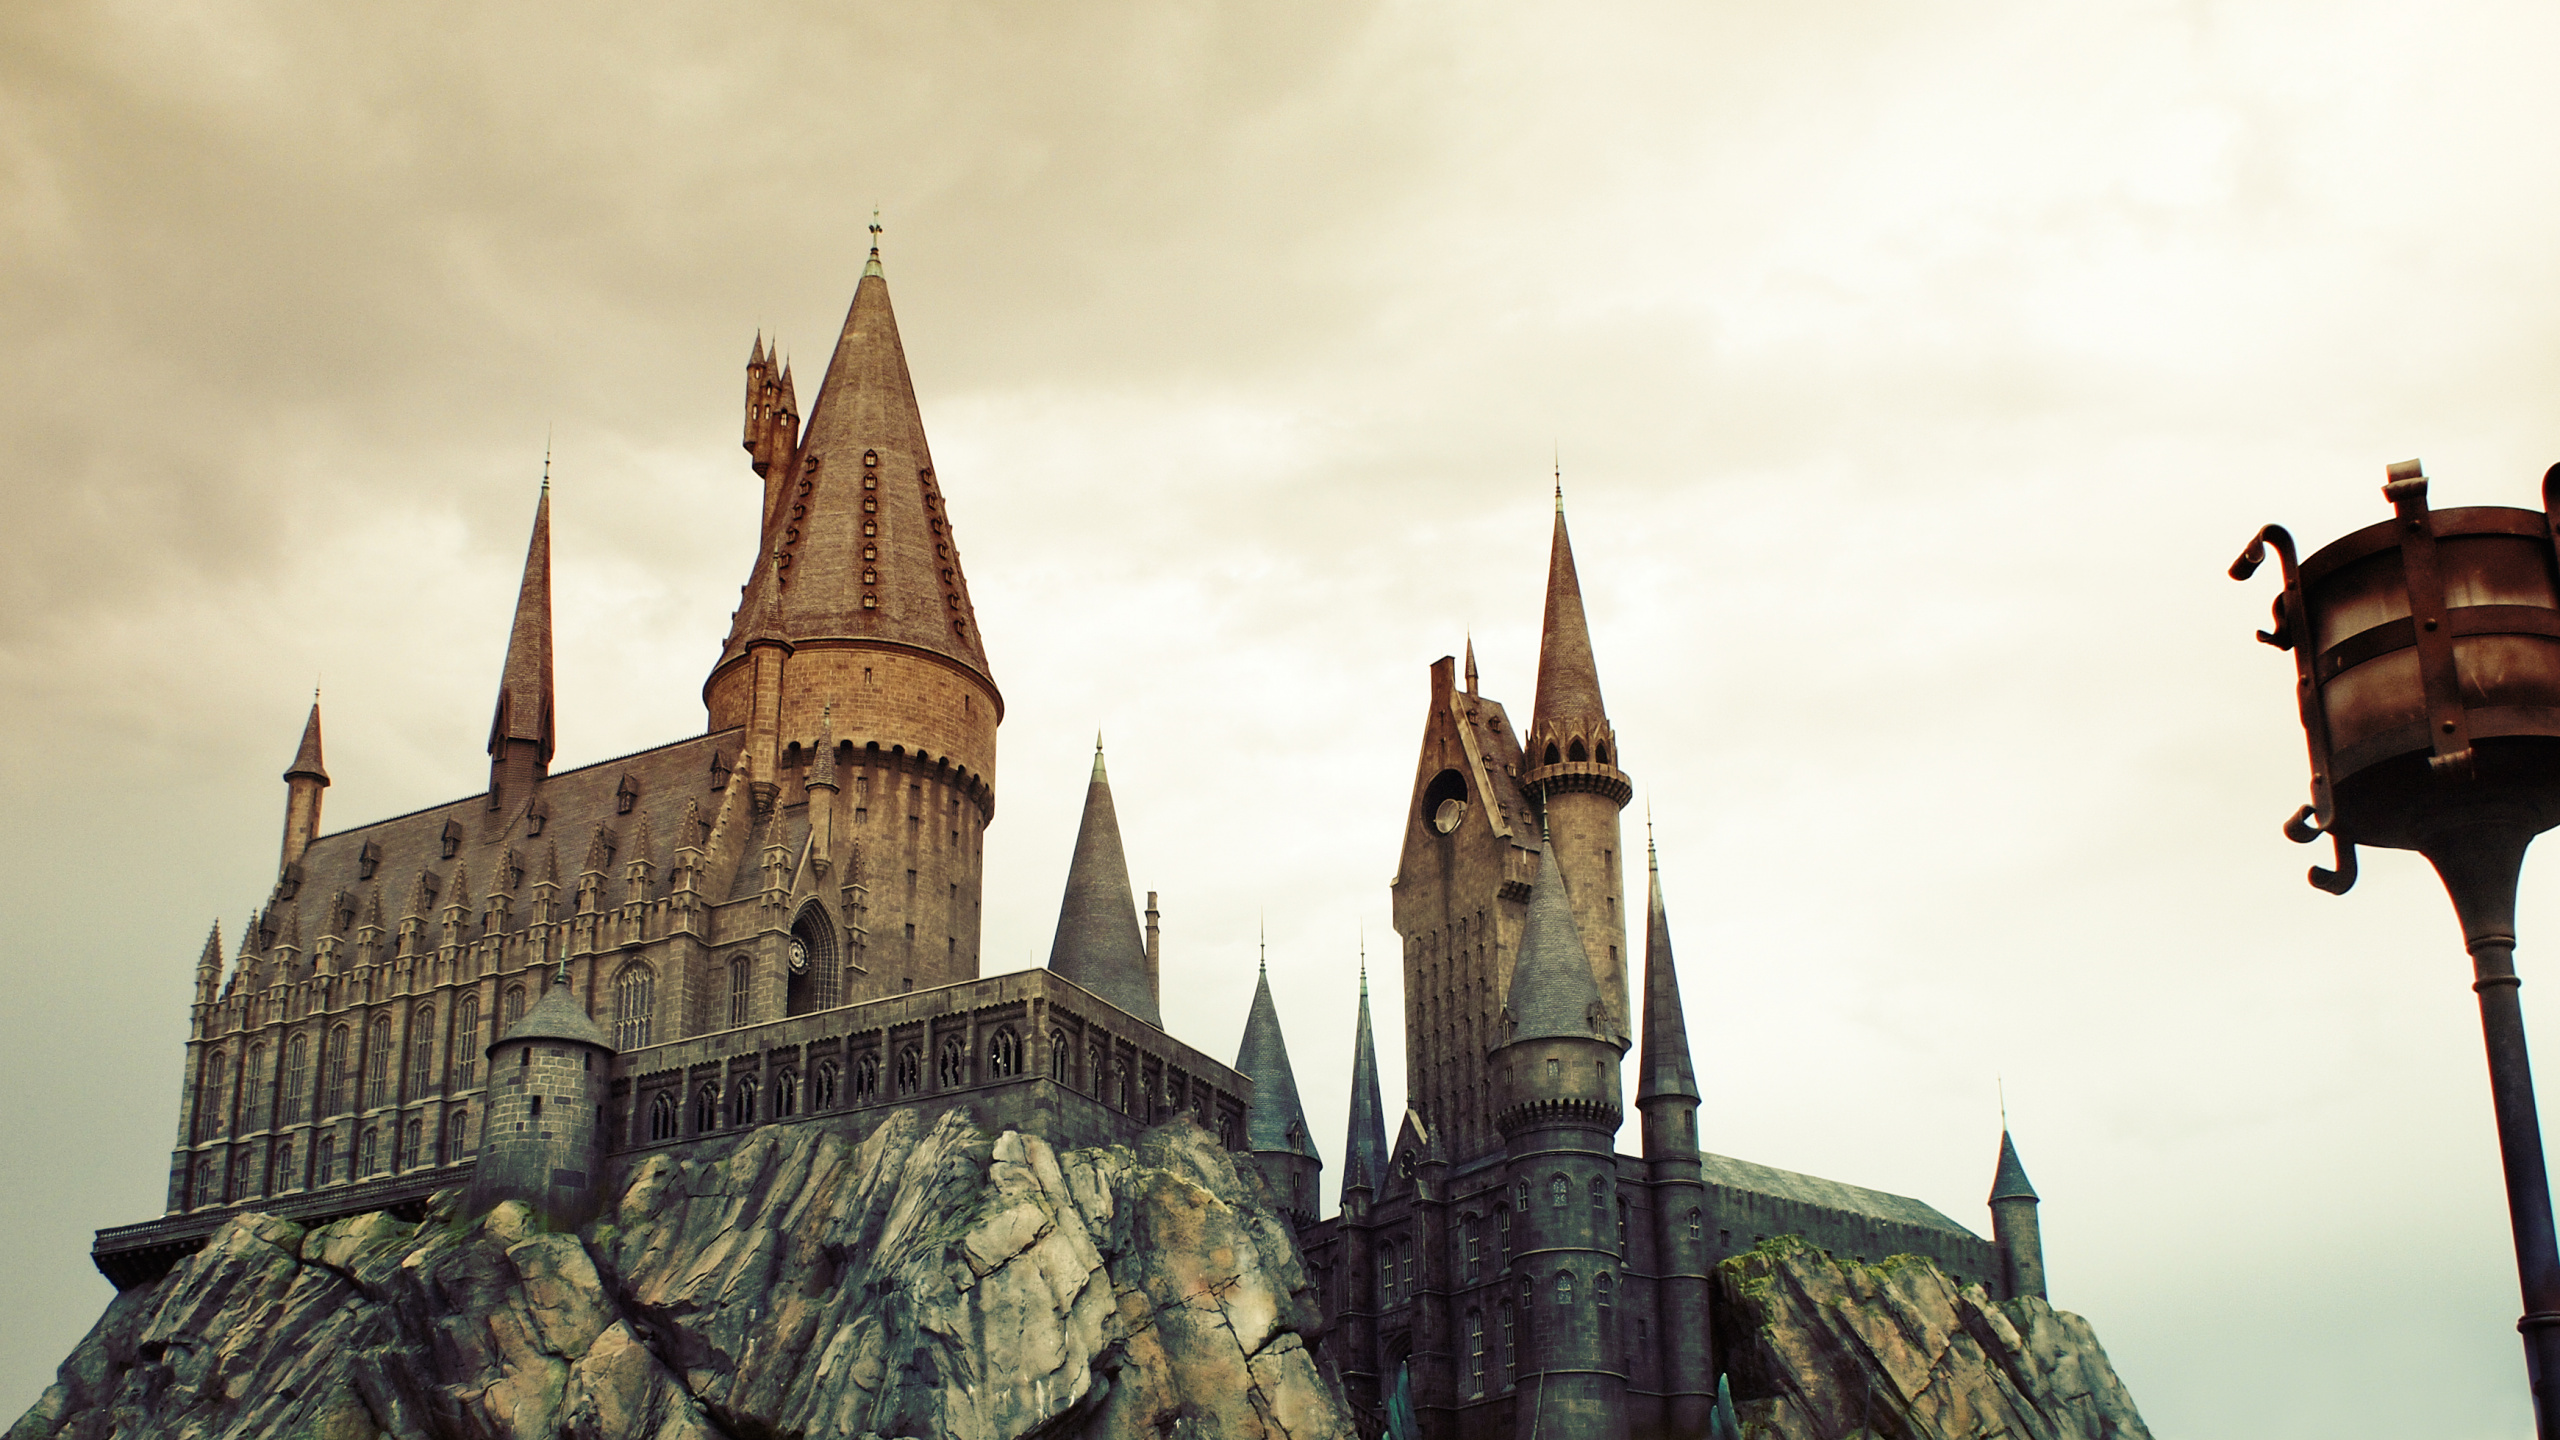 魔法世界的哈利*波特, 旅游景点, 里程碑, 中世纪建筑风格, 尖顶 壁纸 2560x1440 允许